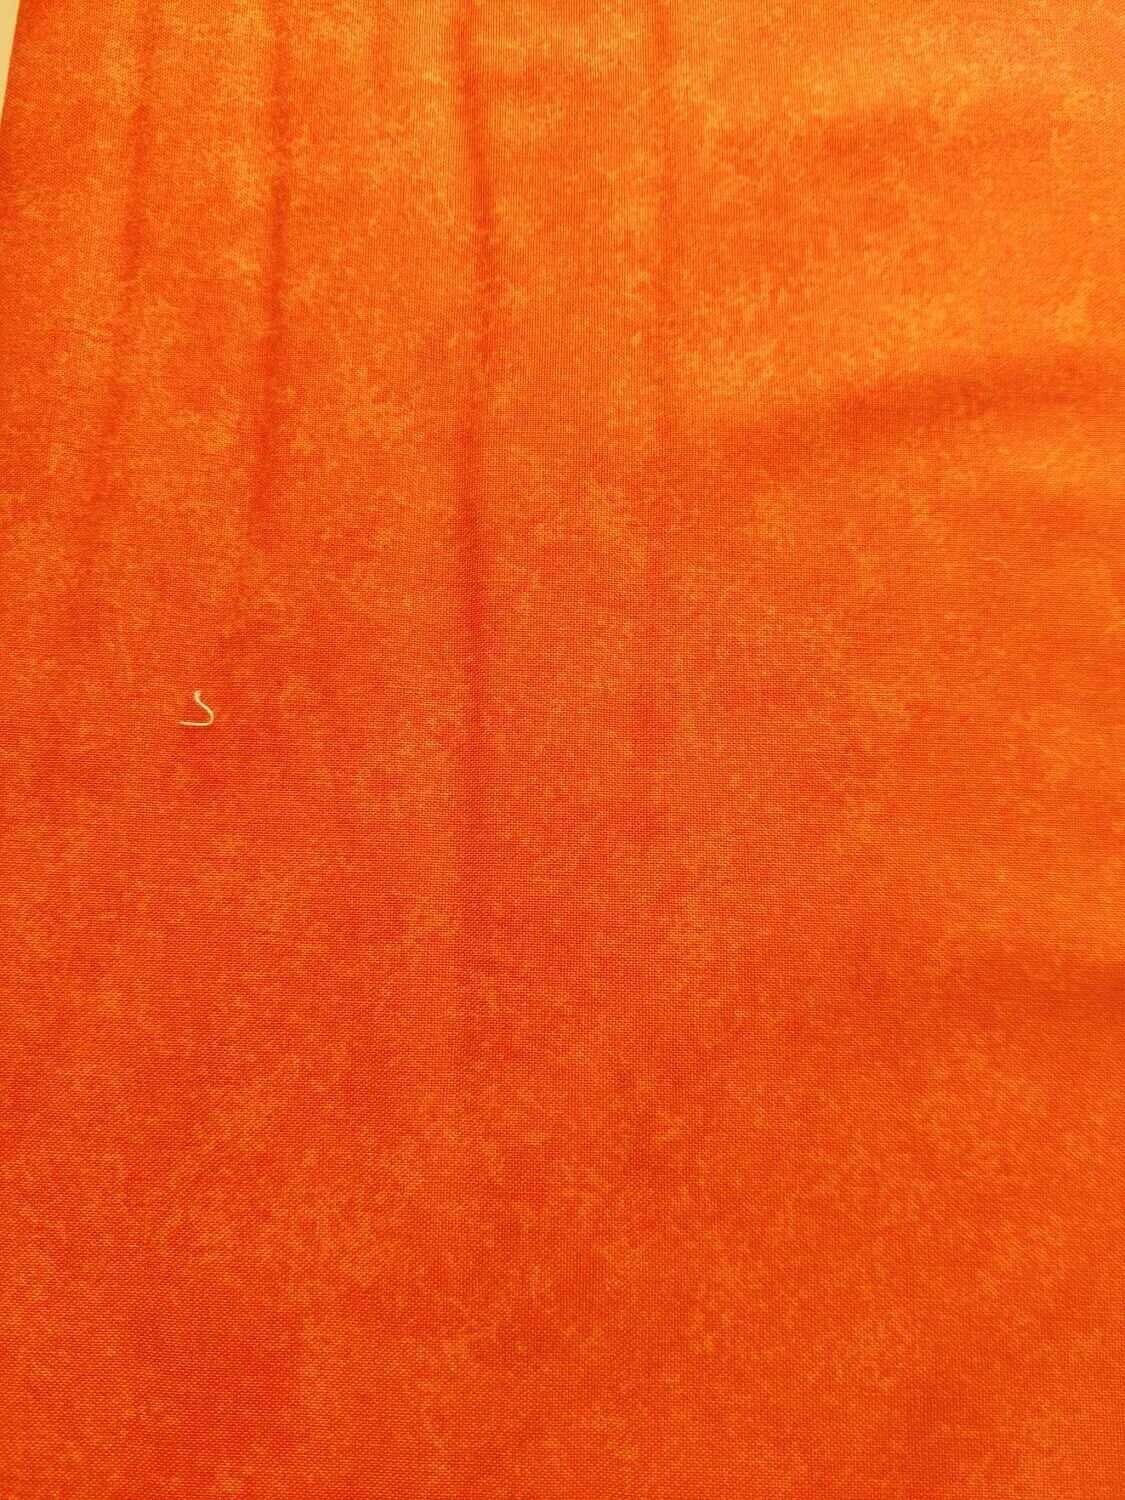 102 marble oranje stof 1.1 meter breed